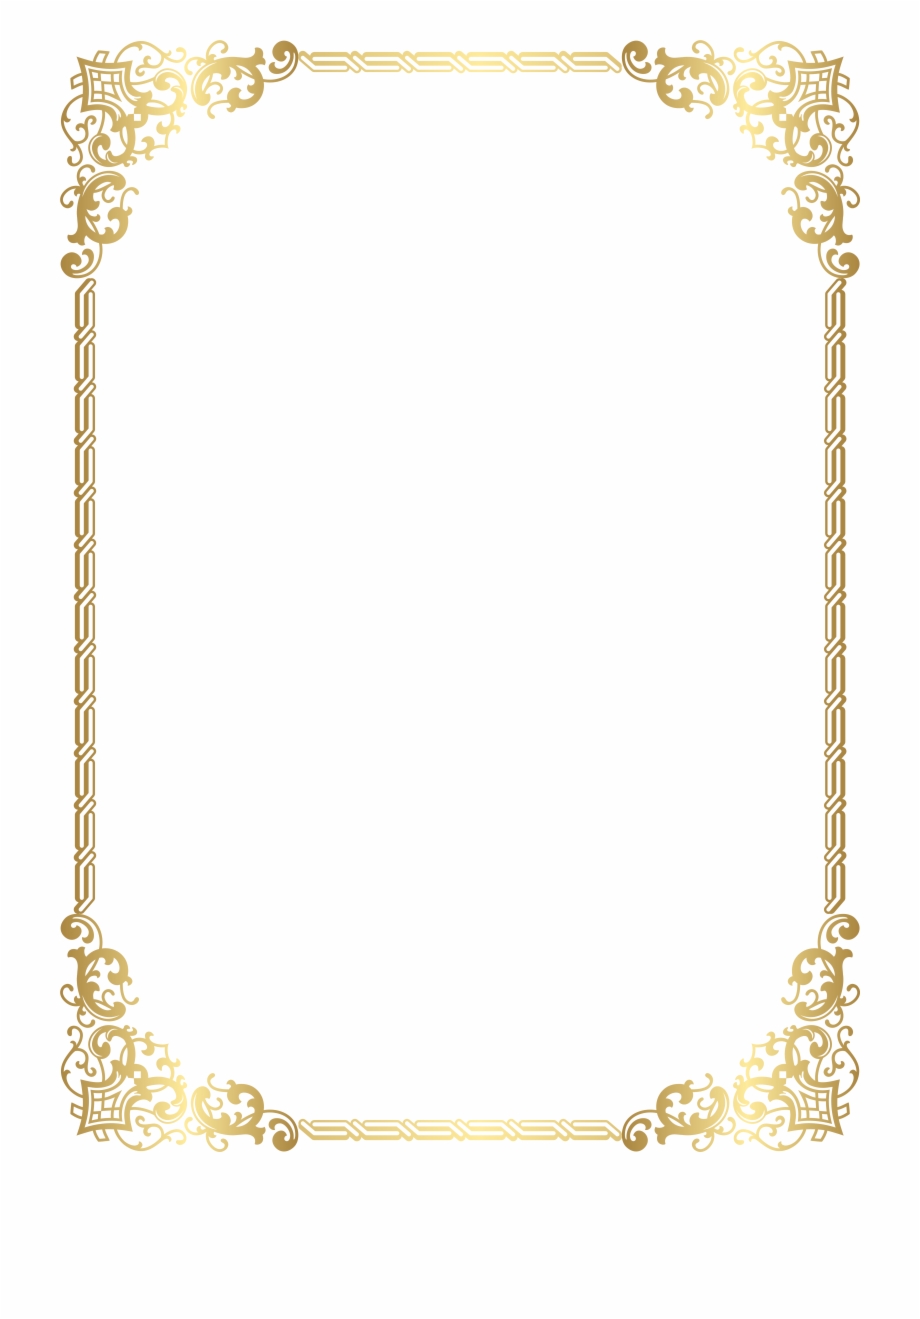 Gold Border Frame Transparent Clip Art Image